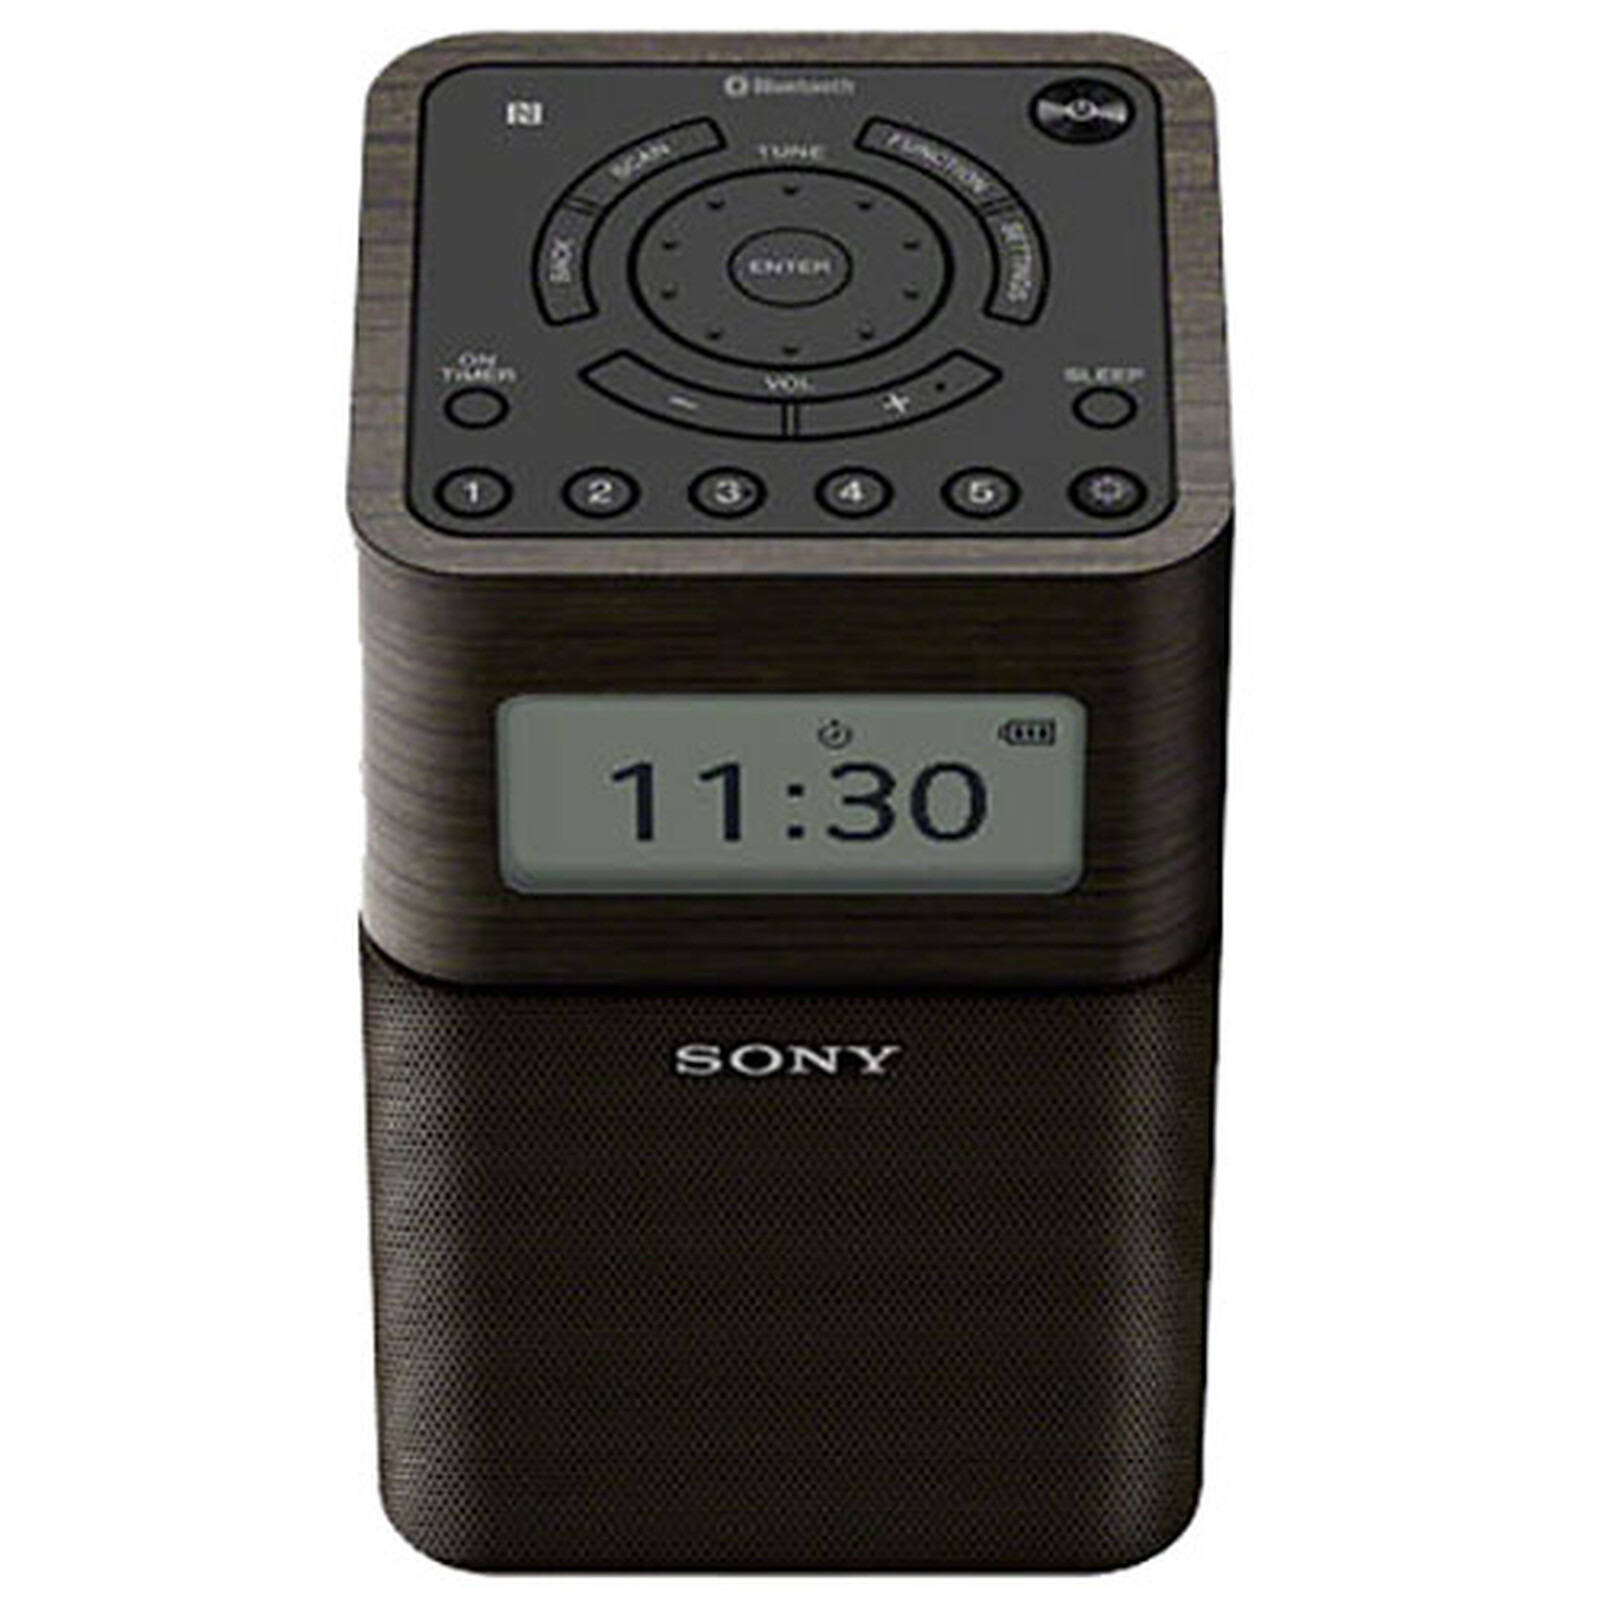 Vigilante Peaje su Sony SRF-V1BT negro - Radio y radio despertador Sony en LDLC |  ¡Musericordia!